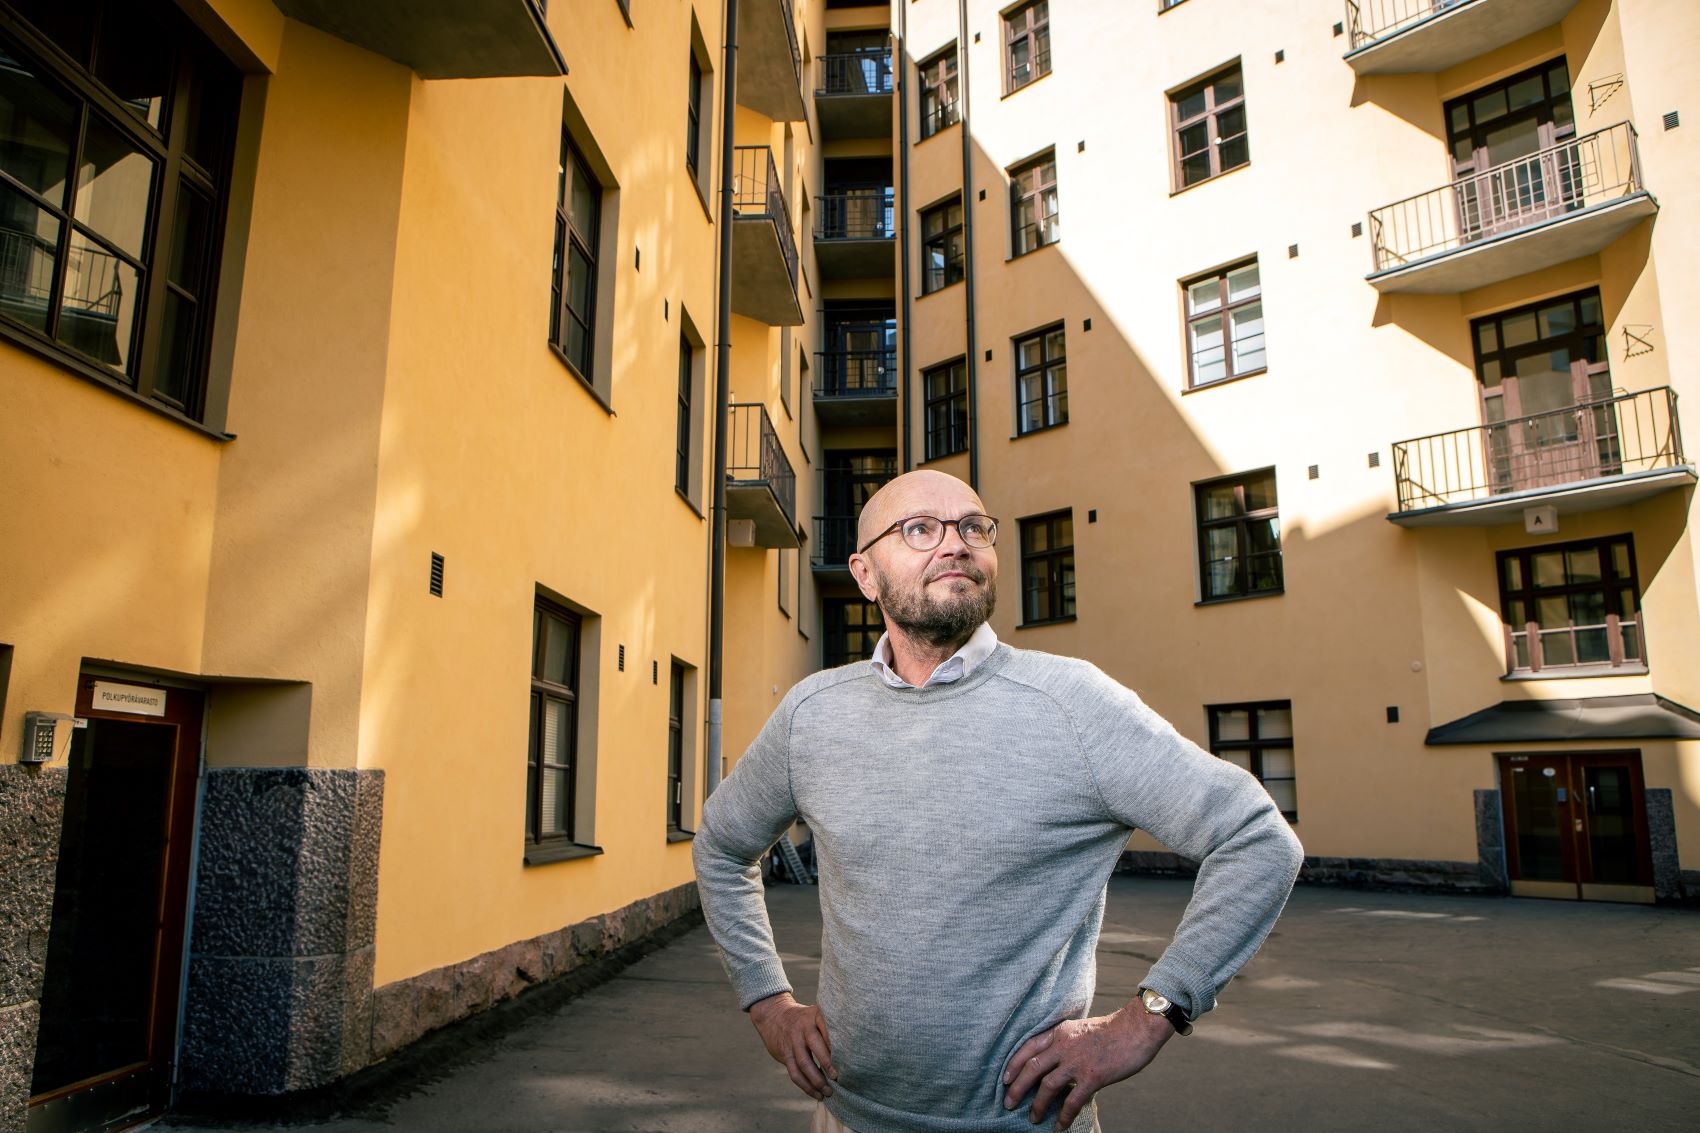 Helsinkiläinen taloyhtiö kilpailutti lainansa uudella Ador-palvelulla. Tulokset yllättivät positiivisesti.